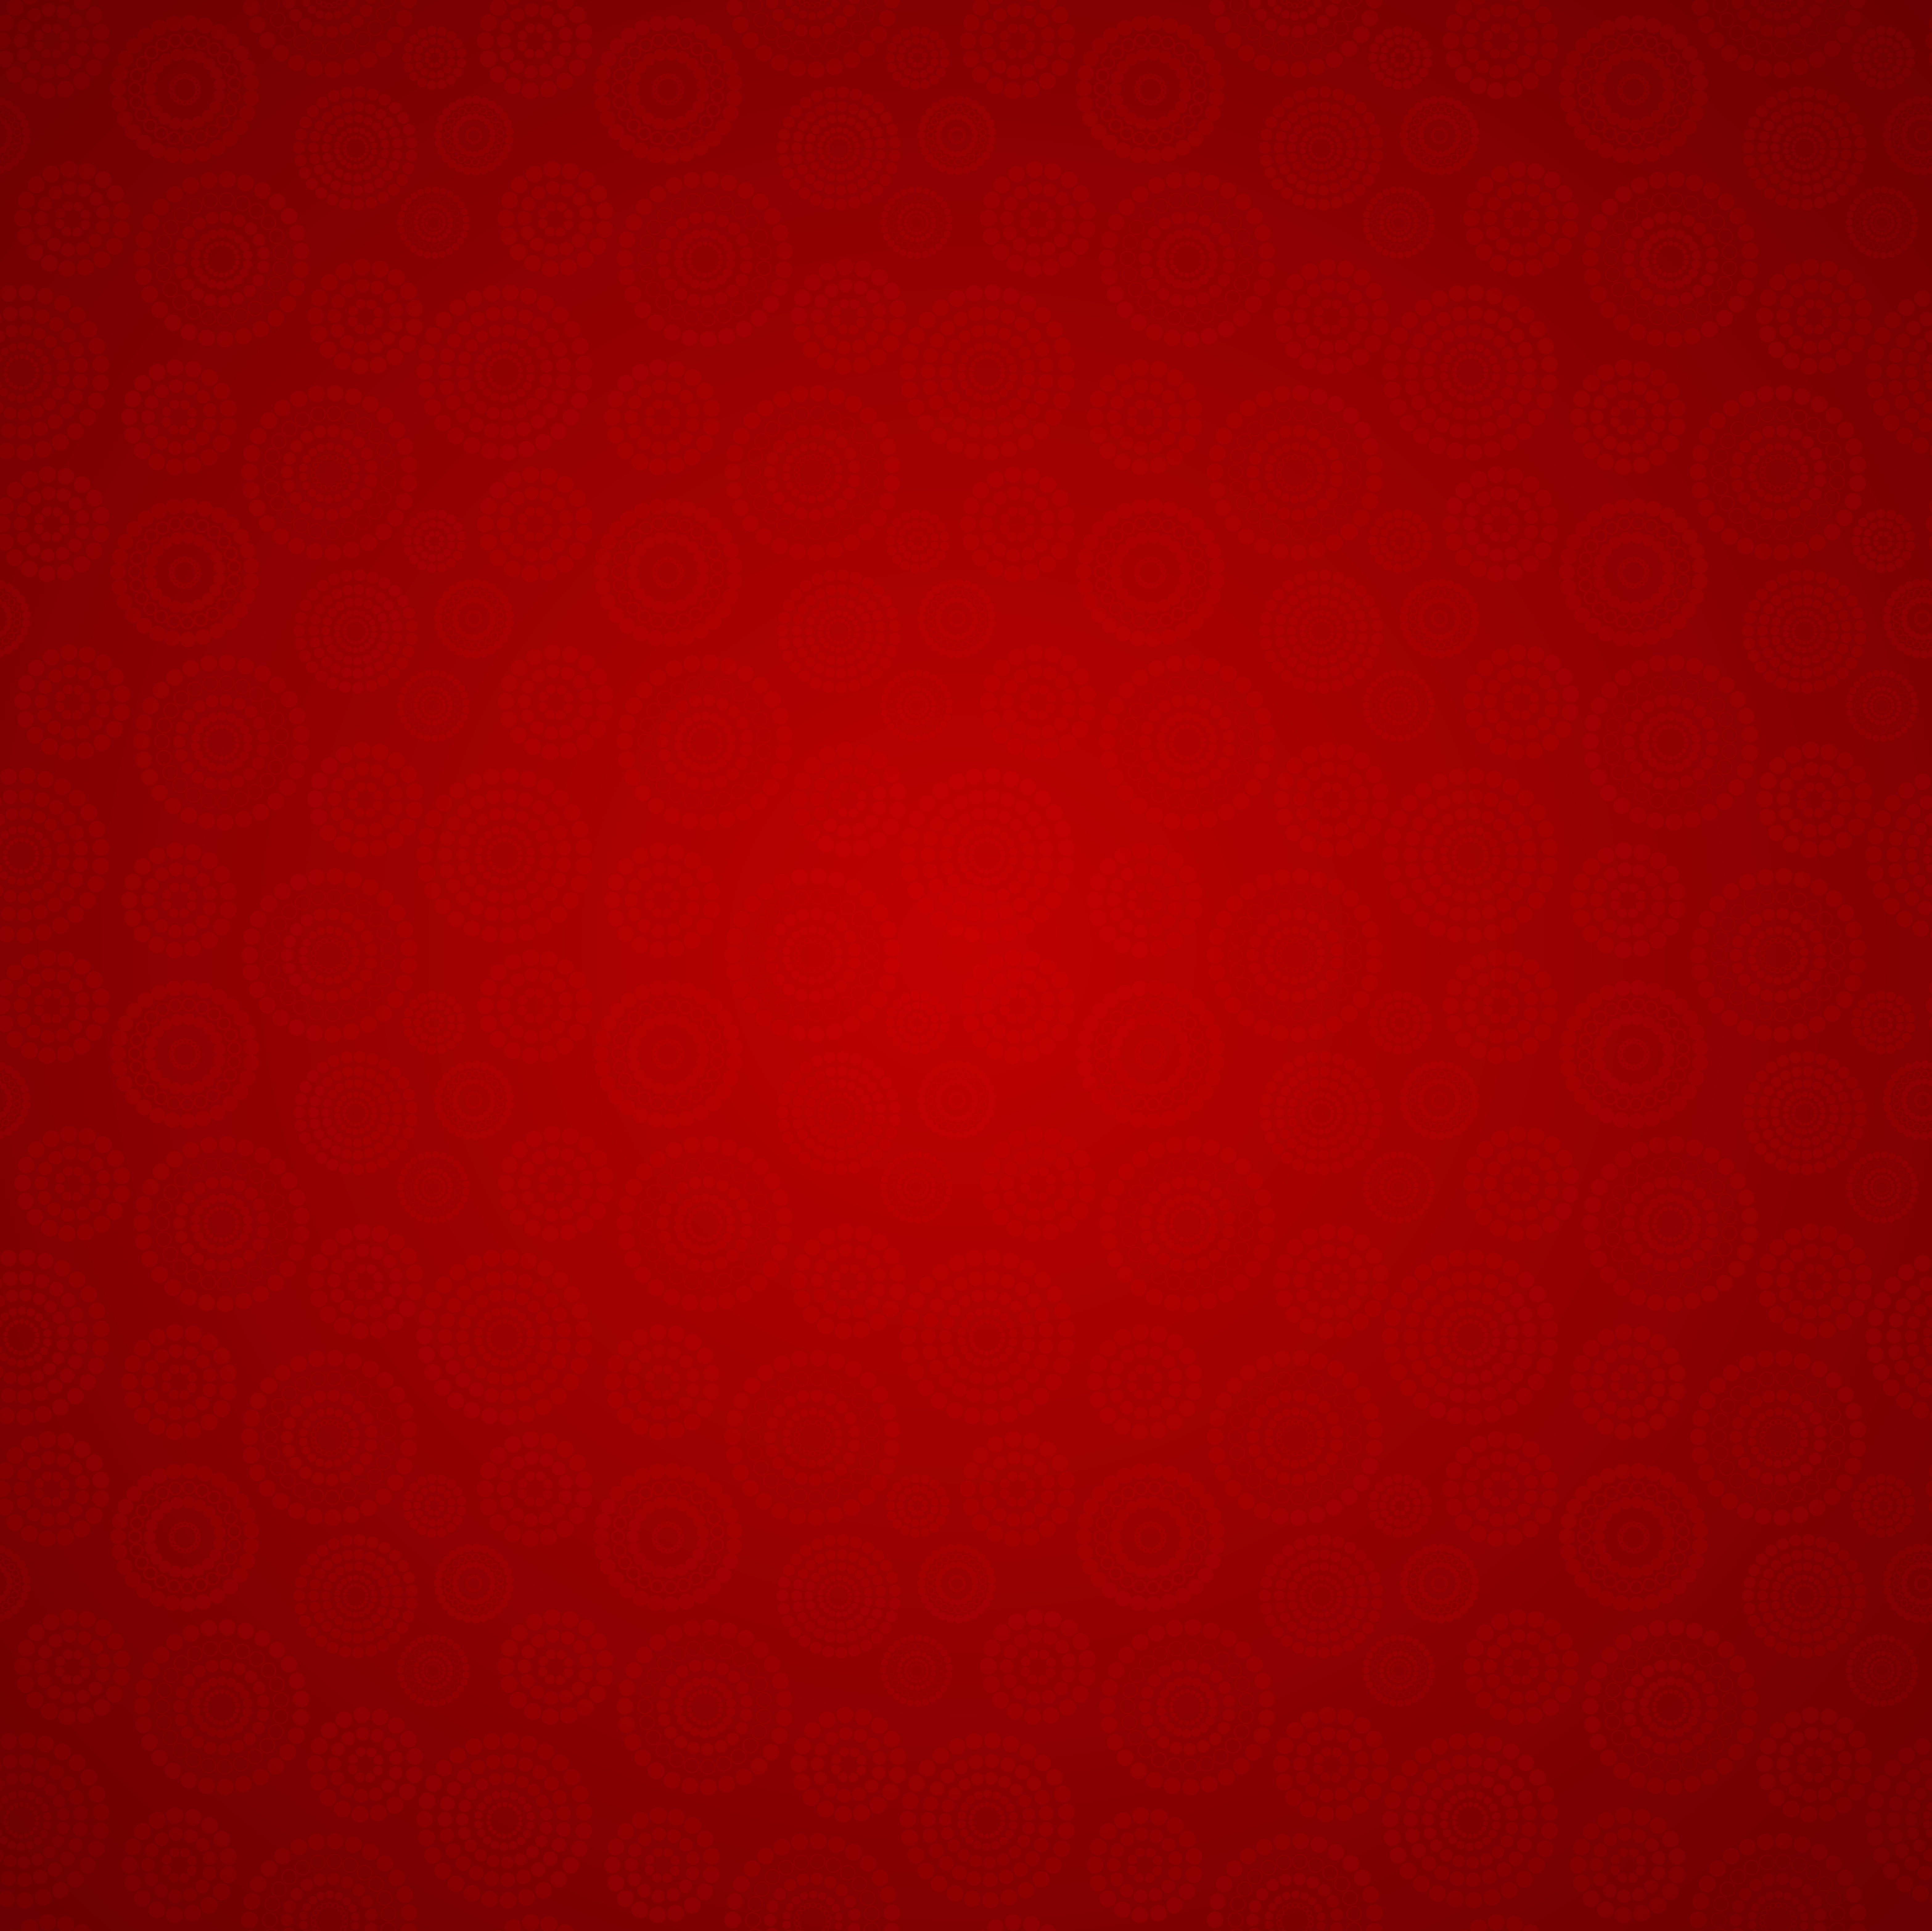 Hình nền đỏ trang trí là lựa chọn hoàn hảo để tô điểm cho không gian làm việc của bạn. Với màu đỏ tươi sáng, bạn sẽ cảm thấy được sự bùng nổ và năng lượng tích cực khi làm việc. Chọn ngay hình nền đỏ trang trí để tạo nên một không gian làm việc đẹp và sáng tạo.